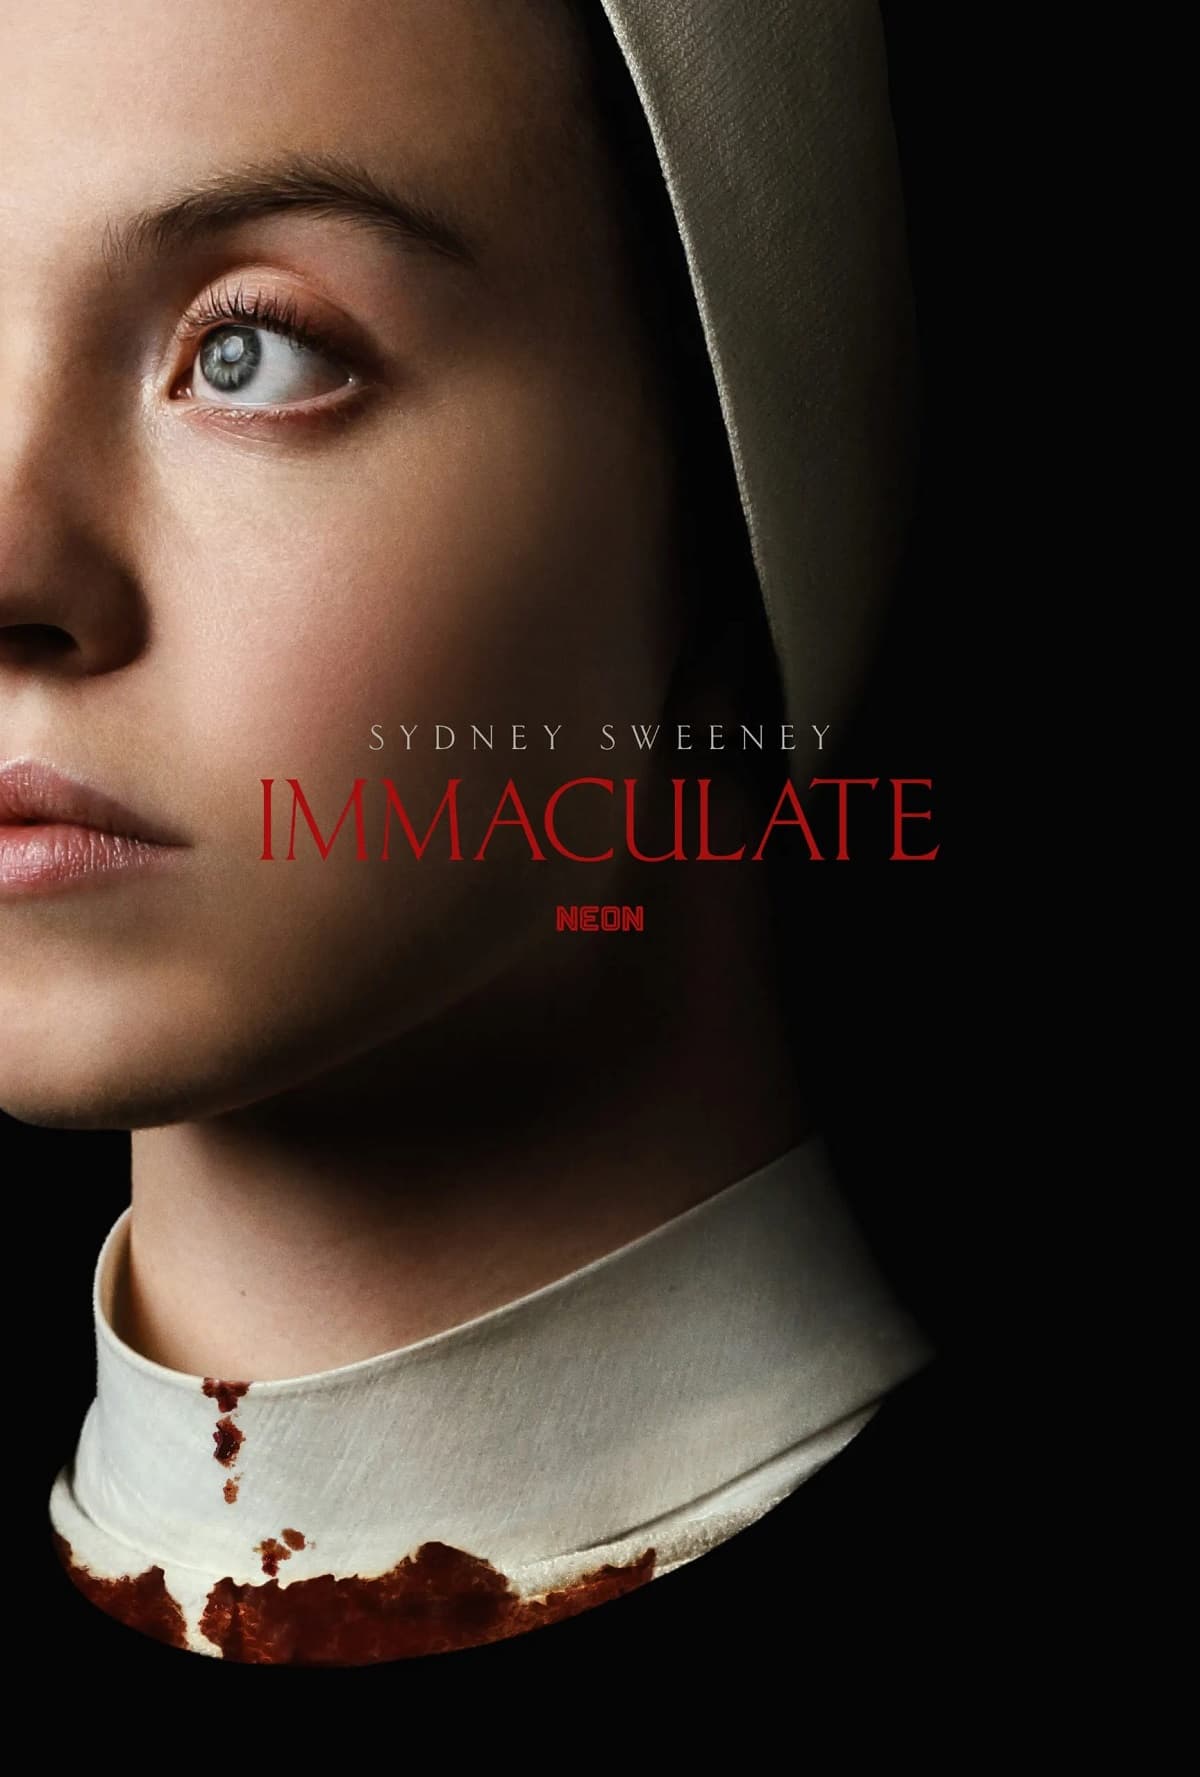 Официальный постер фильма ужасов Immaculate с Сидни Суини